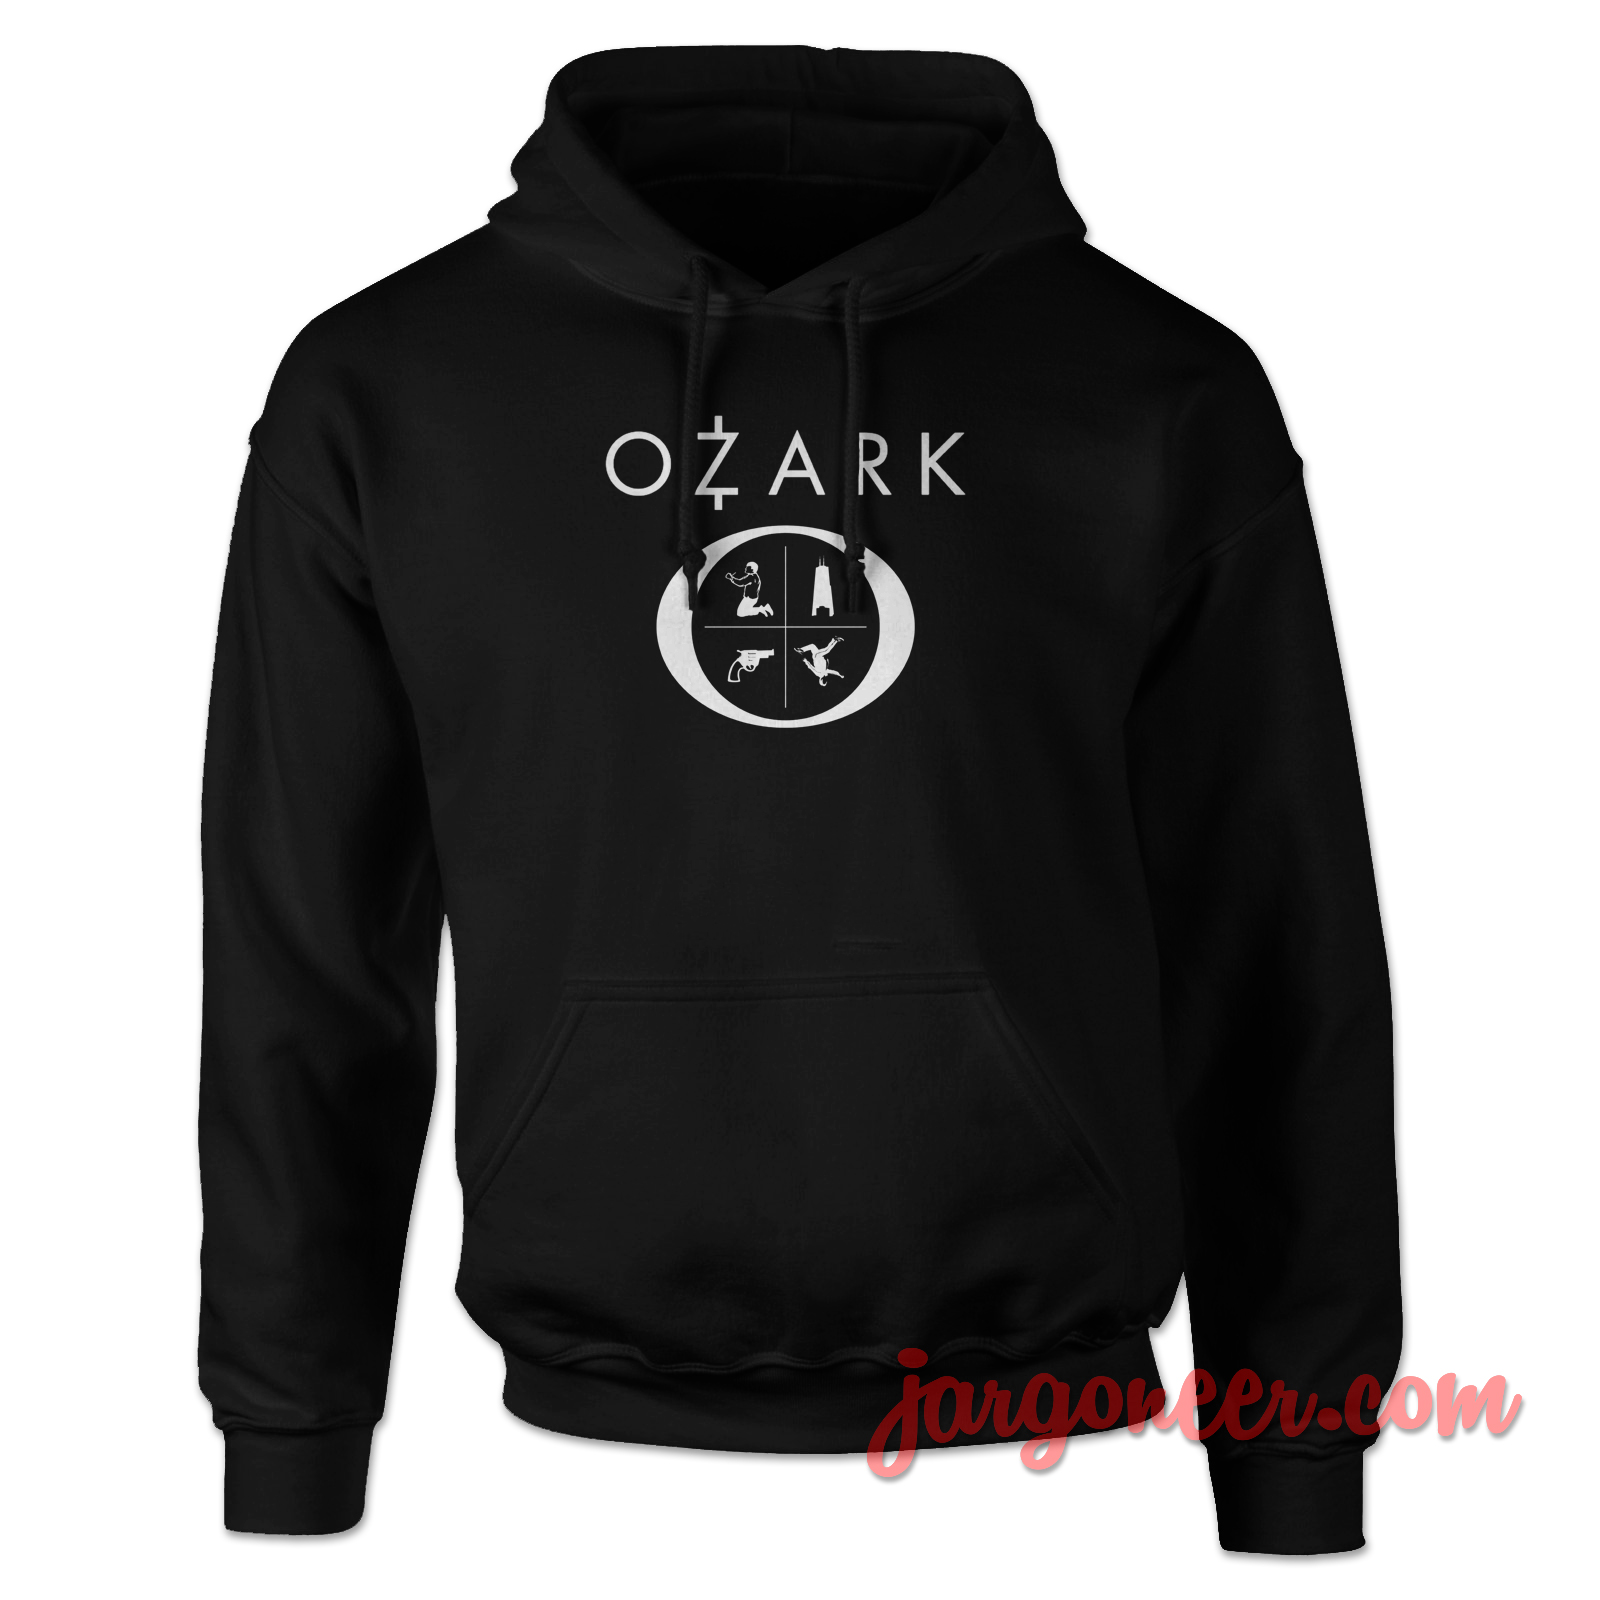 Ozark Series 2 - Shop Unique Graphic Cool Shirt Designs